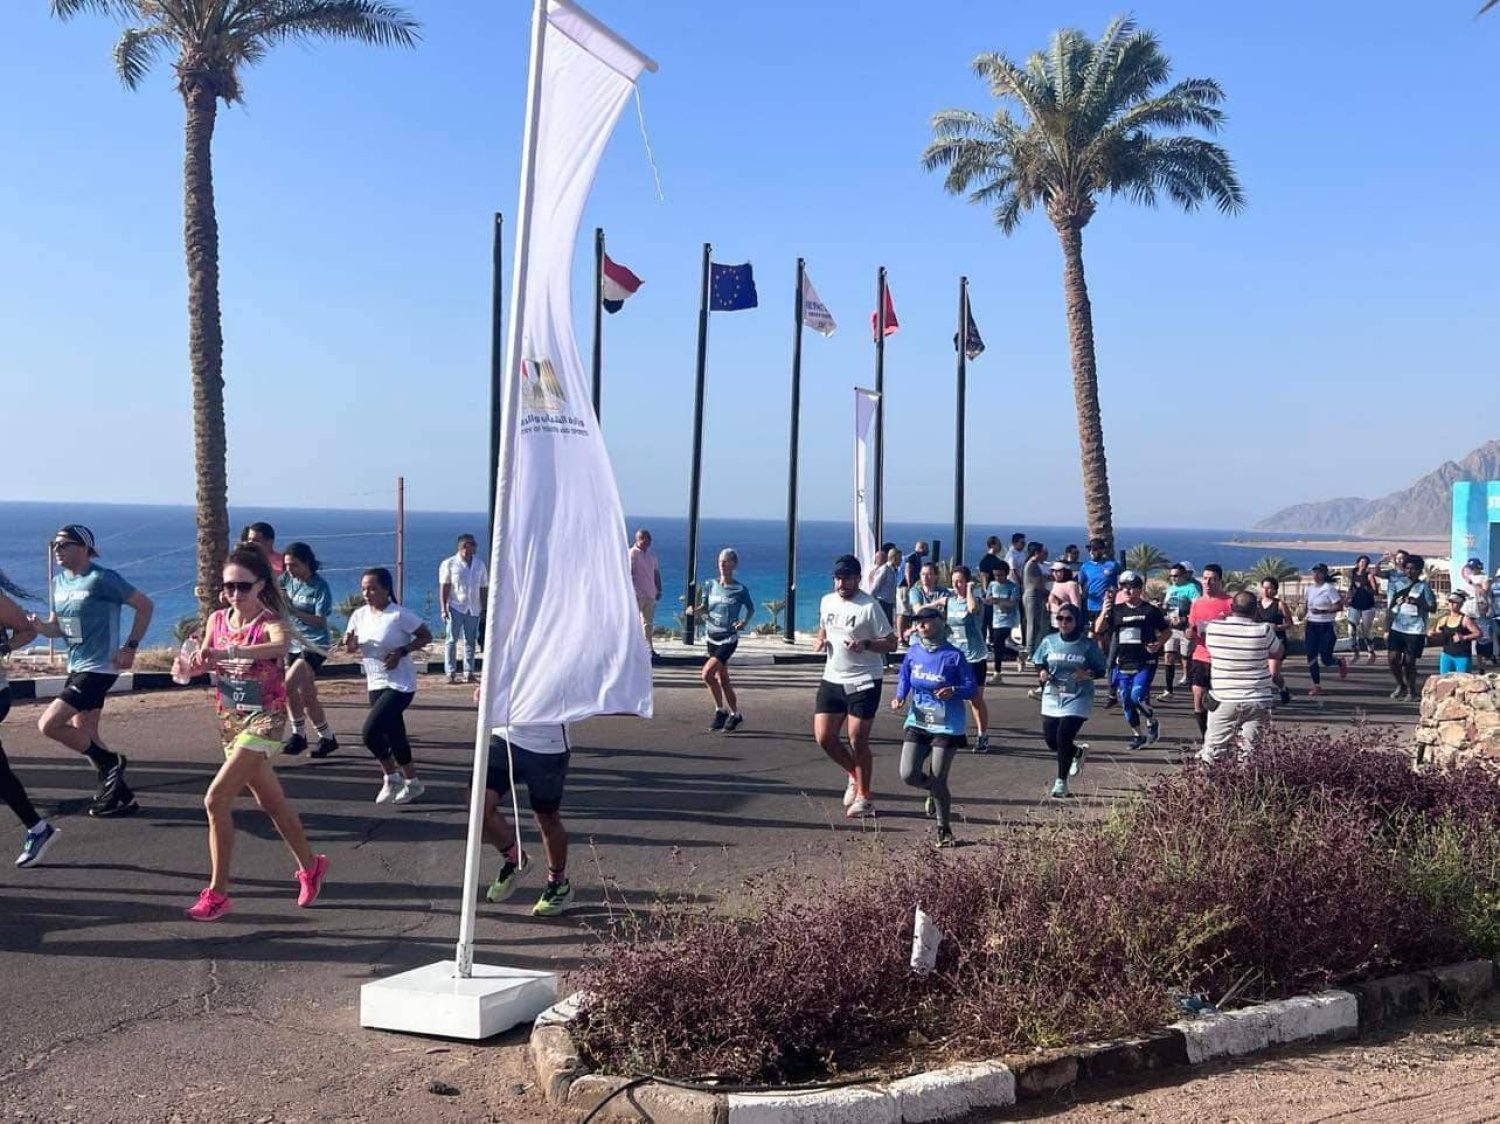 السياحة الرياضية ظهرت في ماراثونات كثيرة (وزارة الشباب والرياضة المصرية)